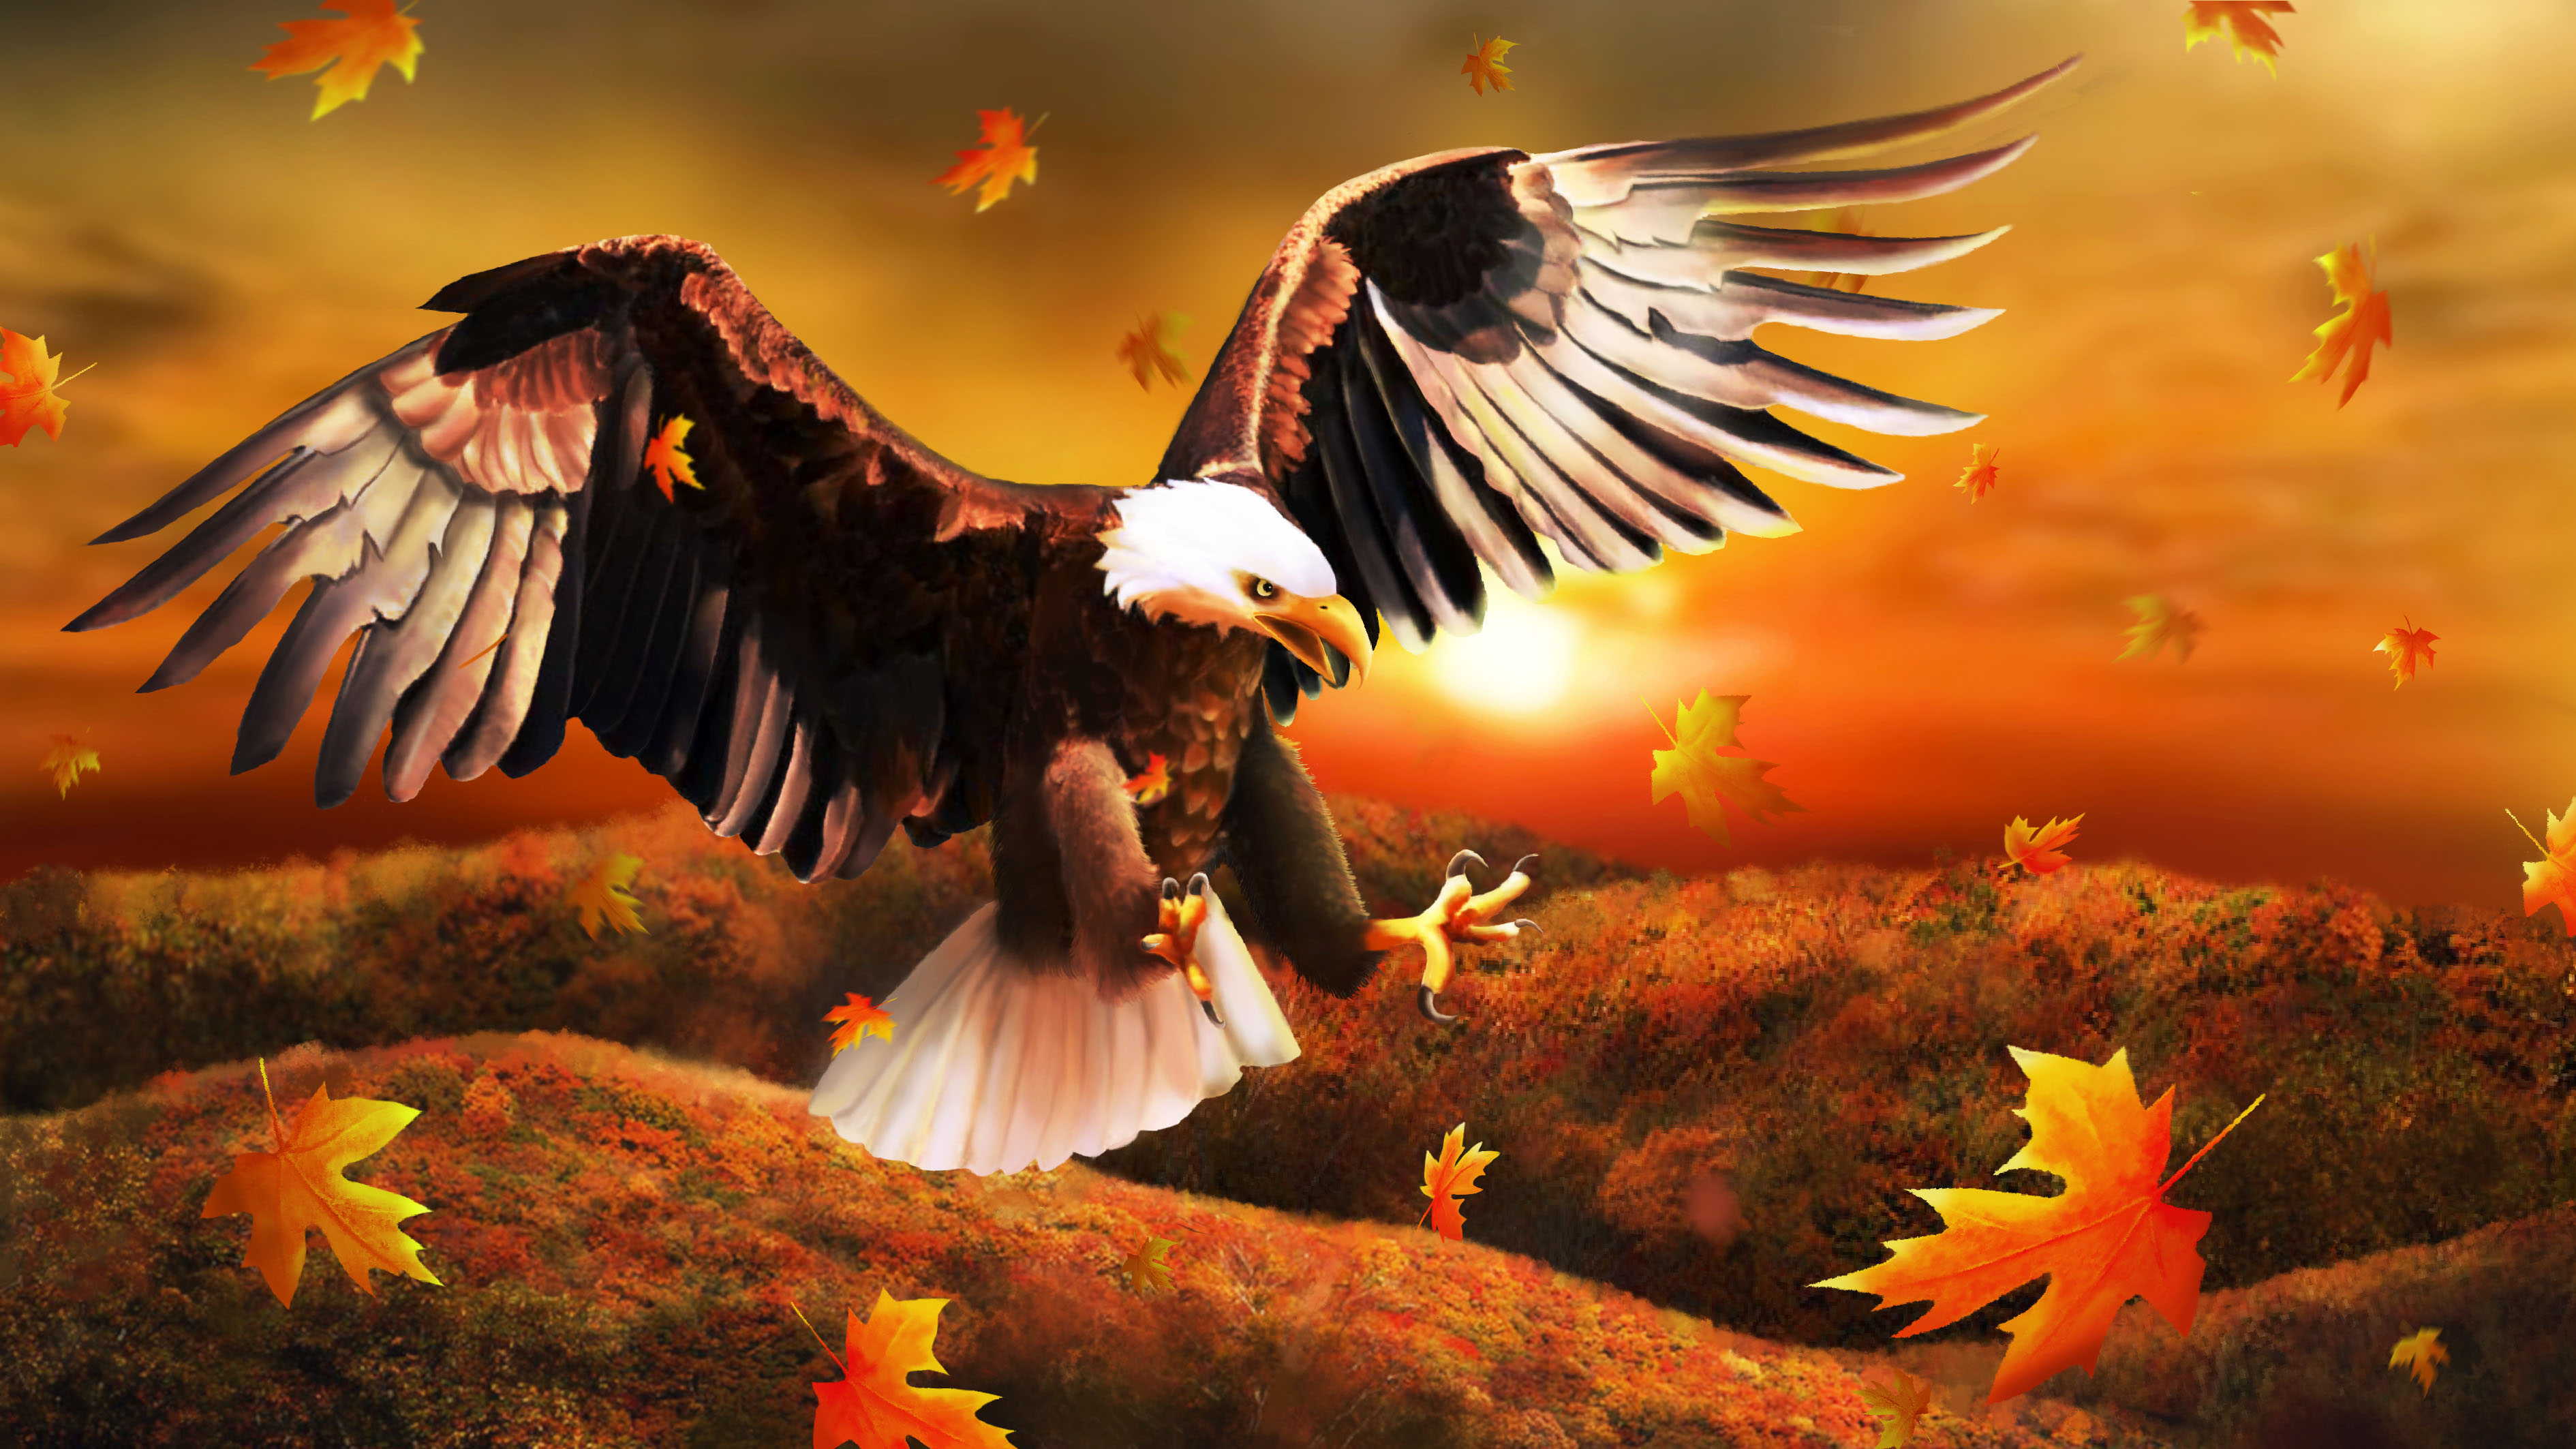 Descargar las imágenes de Águila gratis para teléfonos Android y iPhone,  fondos de pantalla de Águila para teléfonos móviles